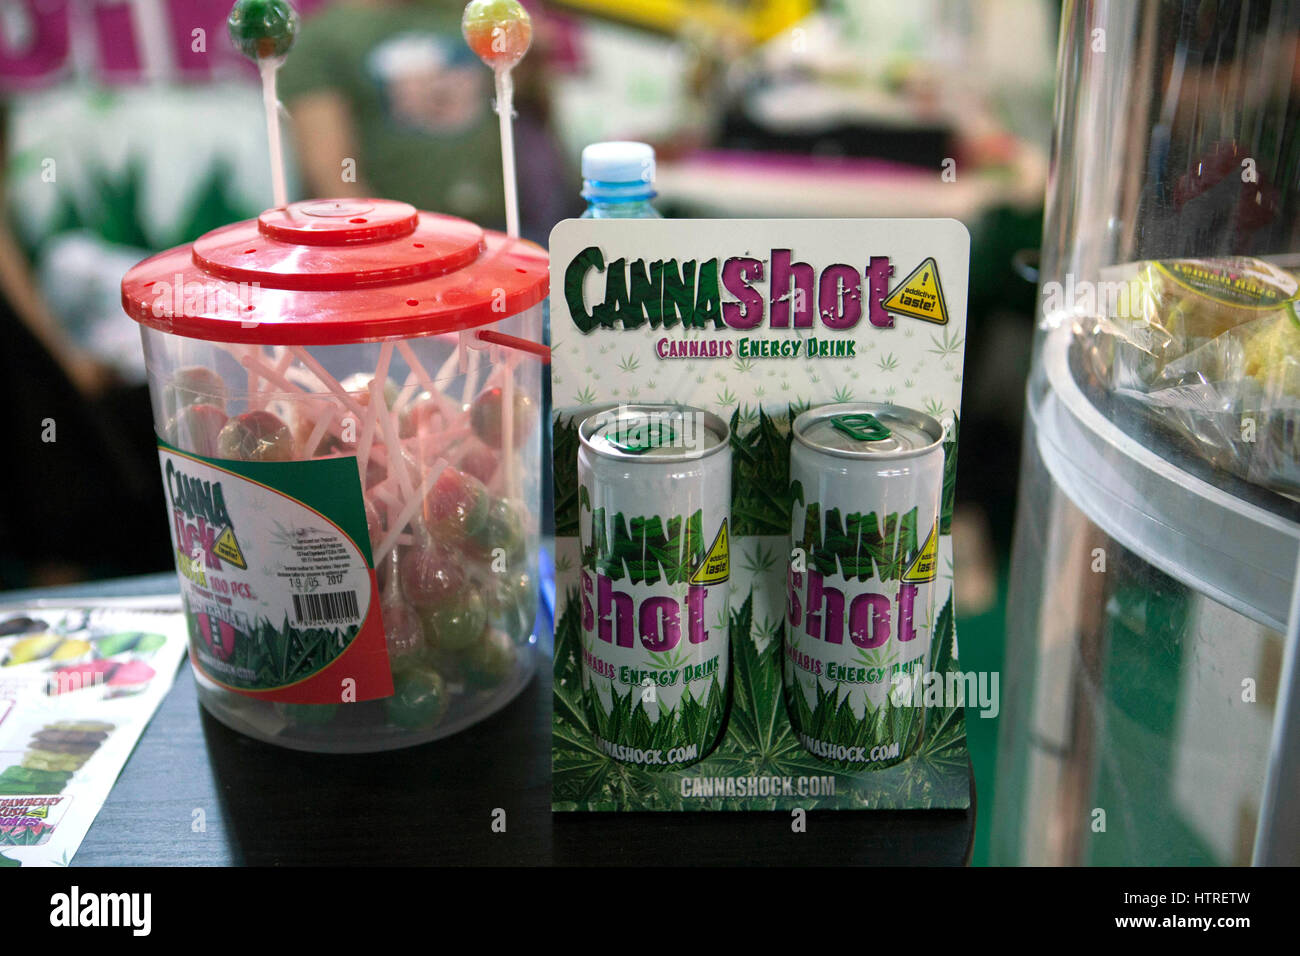 Cannabis-Energie dink bei Canapa Mundi die internationalen Messe, jetzt in seiner vierten Auflage Hanf mit Produkten, die im Zusammenhang mit Lebensmitteln, Kunsthandwerk, Kosmetik und Stockfoto